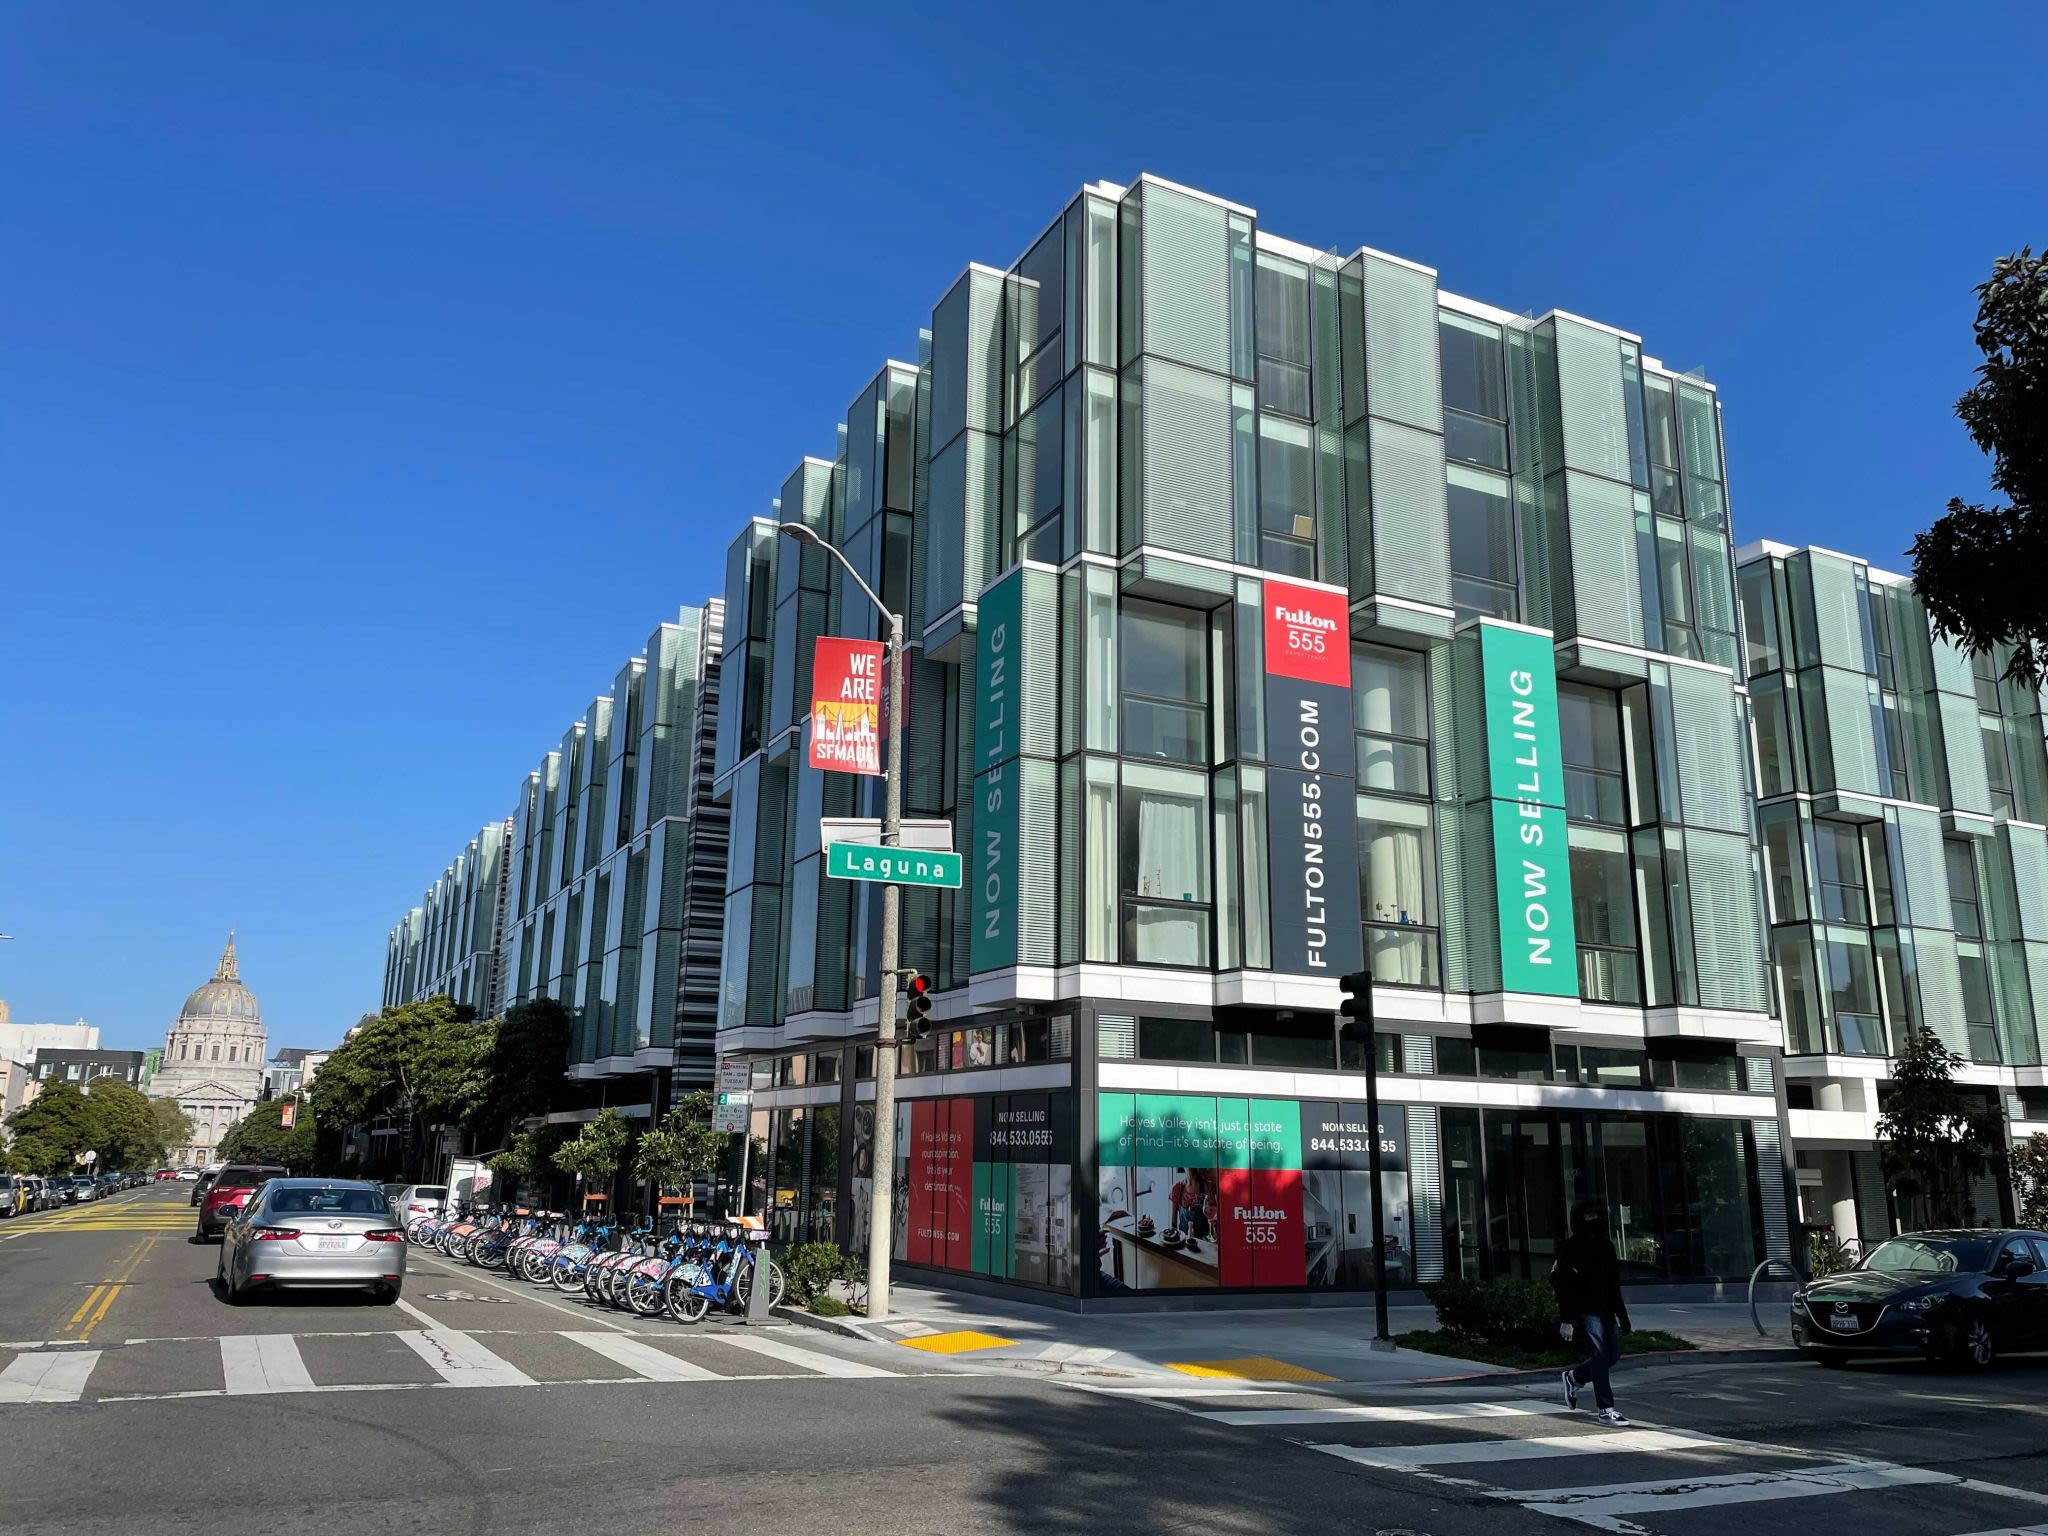 San Francisco's long-awaited new Trader Joe's opens this week